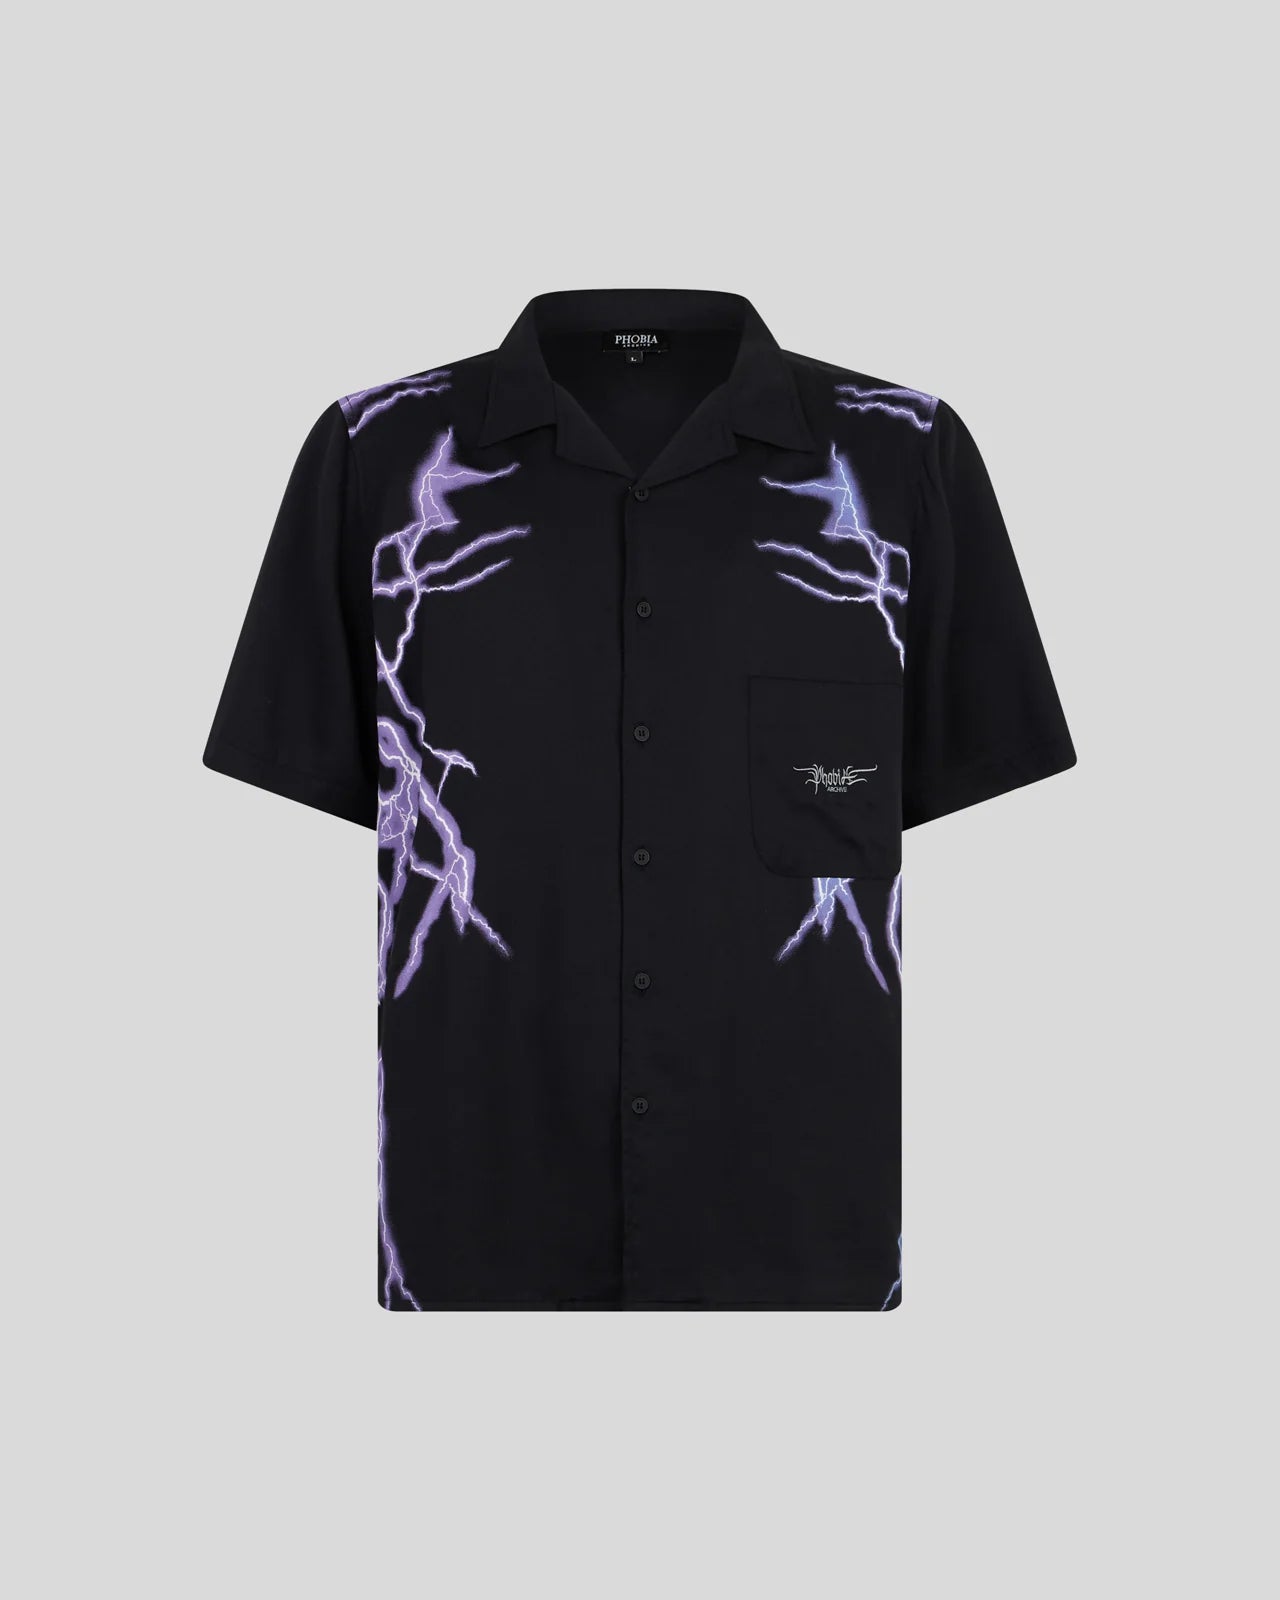 Camicia Phobia nera con fulmini laterali viola